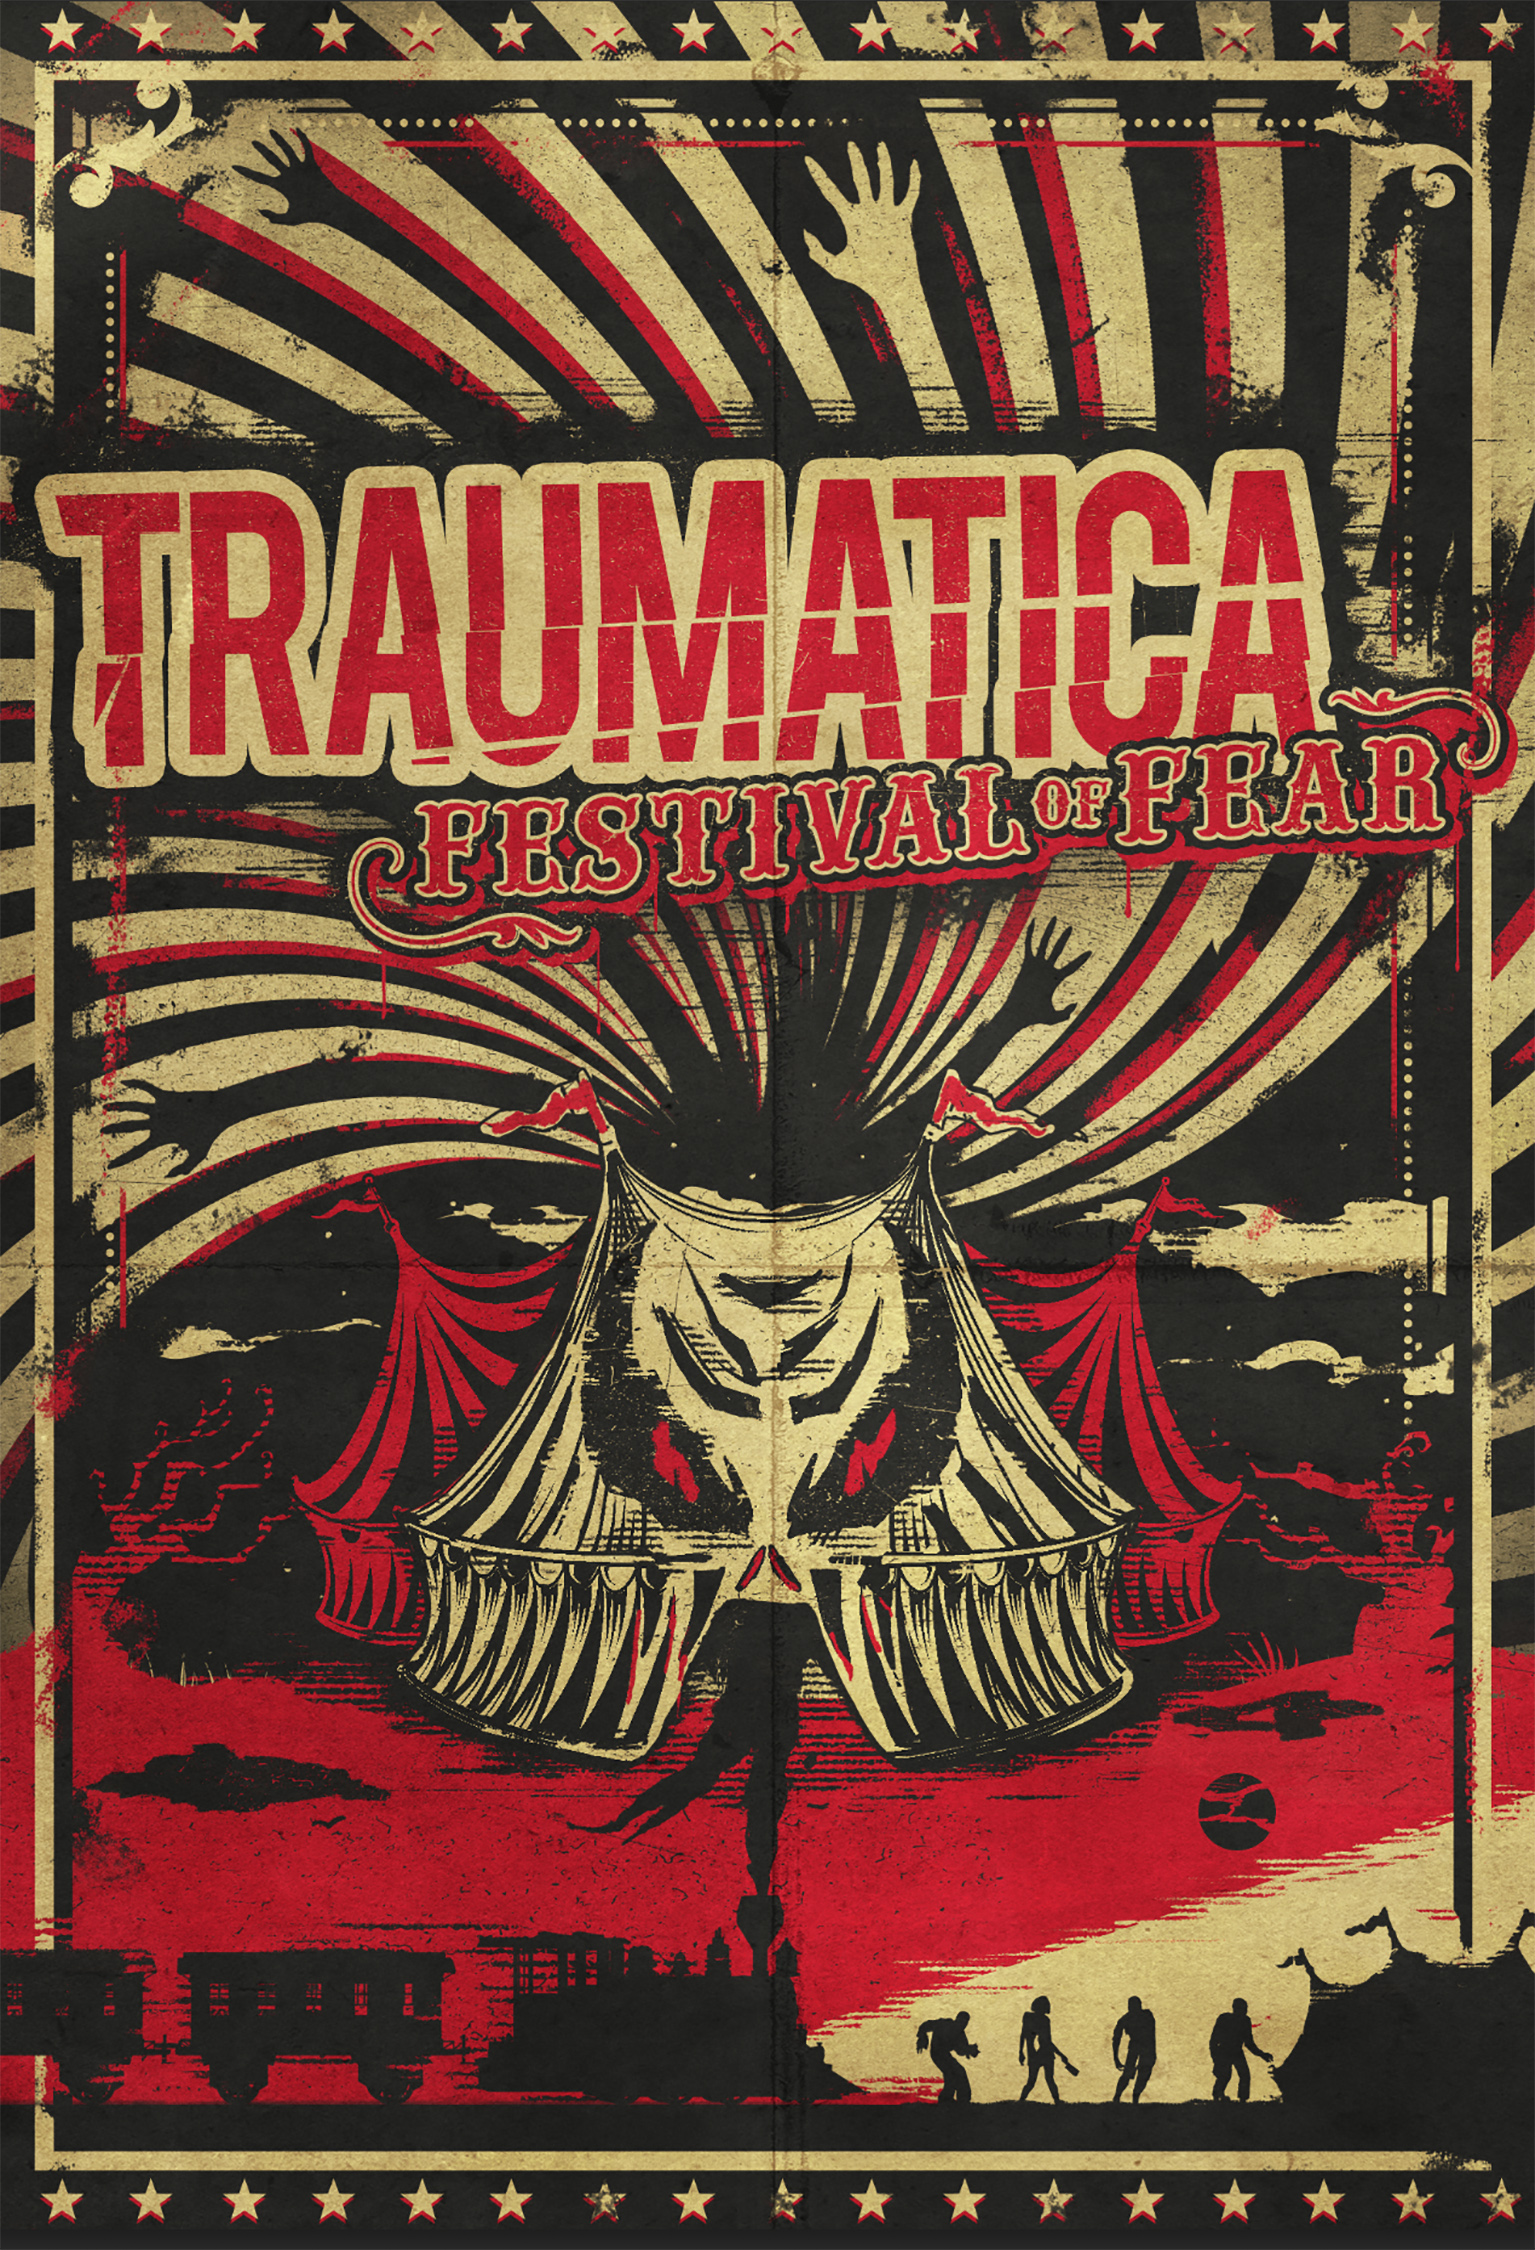 Festival of Fear : Traumatica